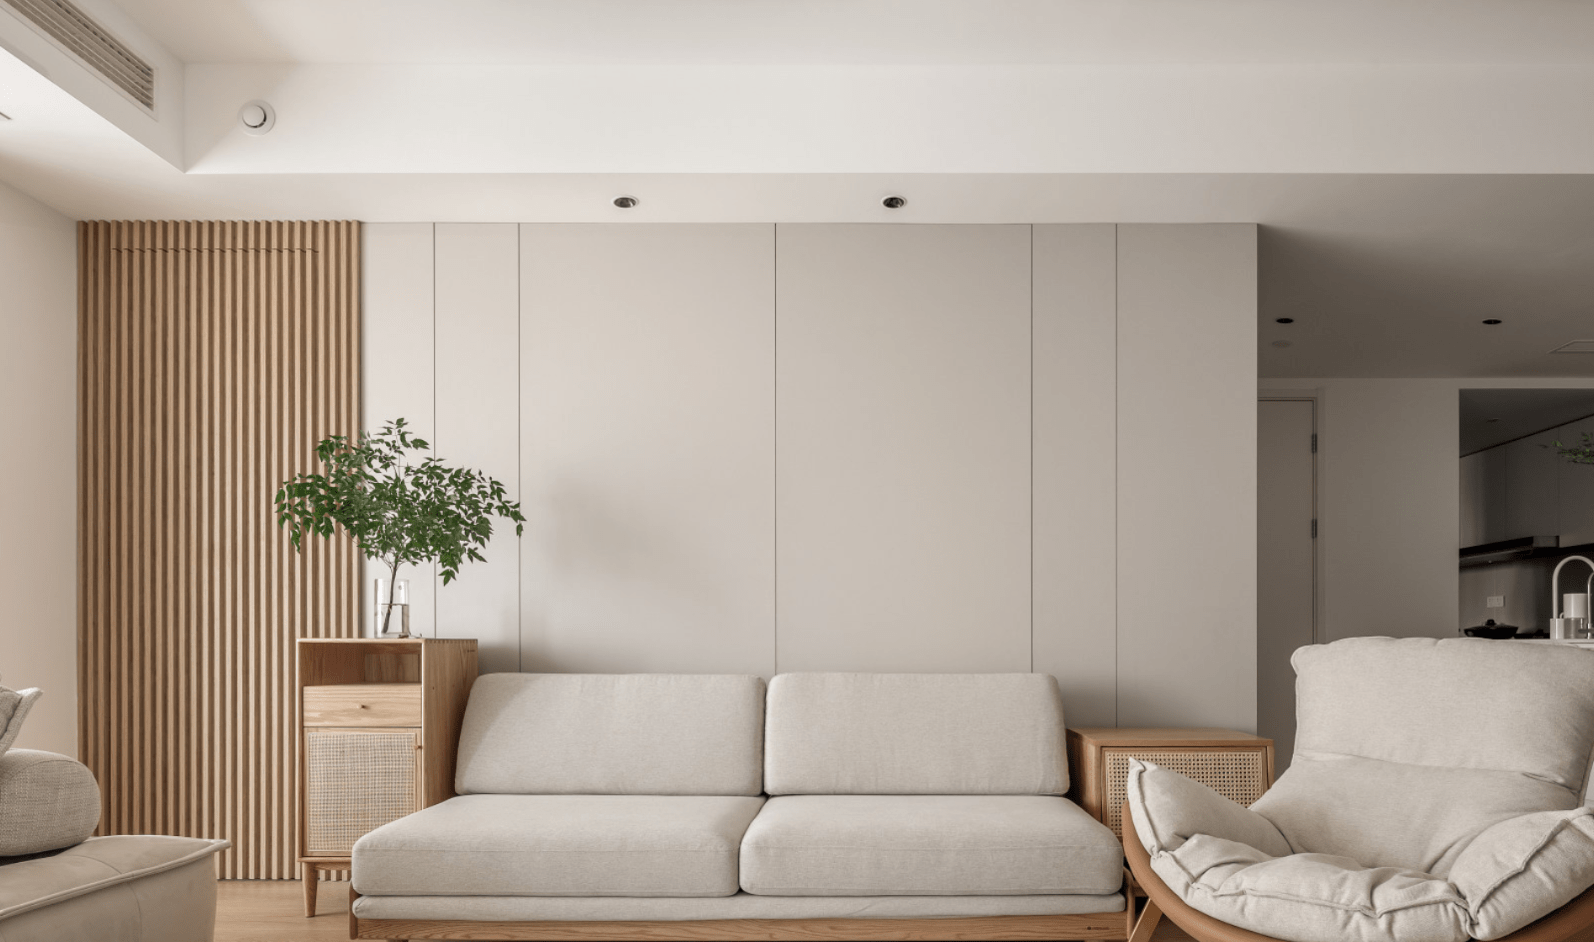 沙发背景墙采用米色石膏板,原木格栅两种材质来设计,再通过不同的线条